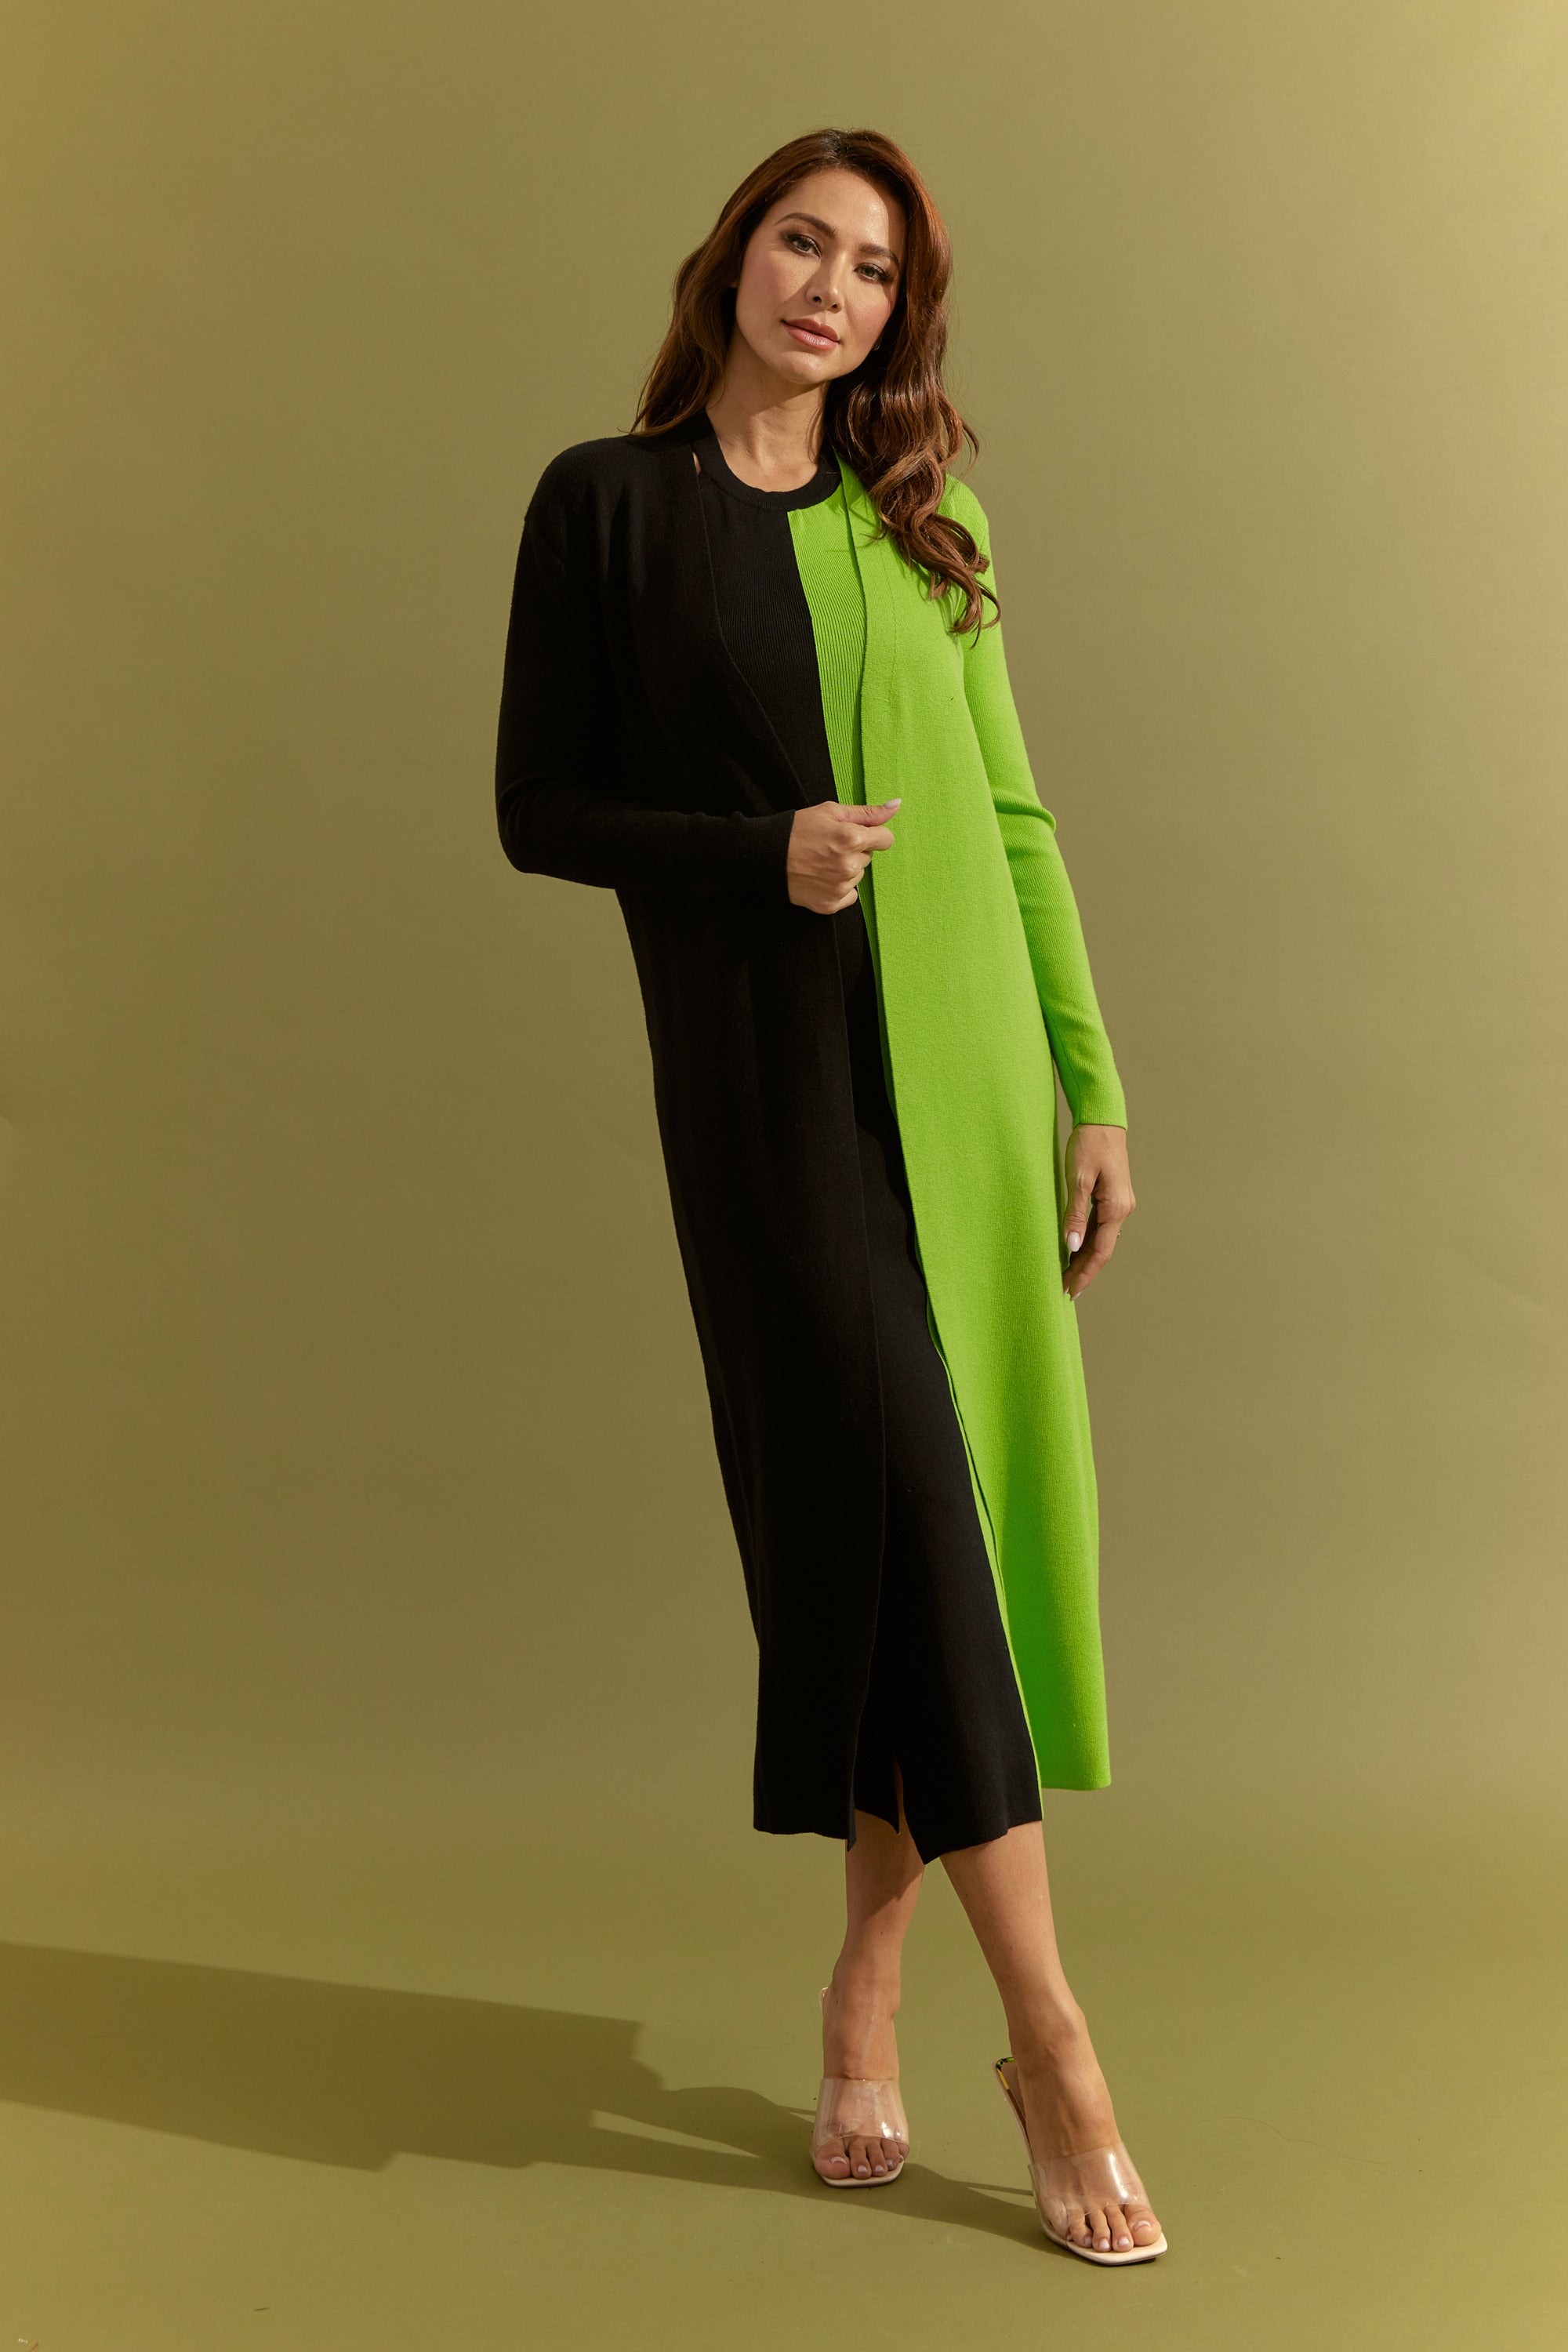 Knit Colorblock Maxi Dress and Cardigan Set